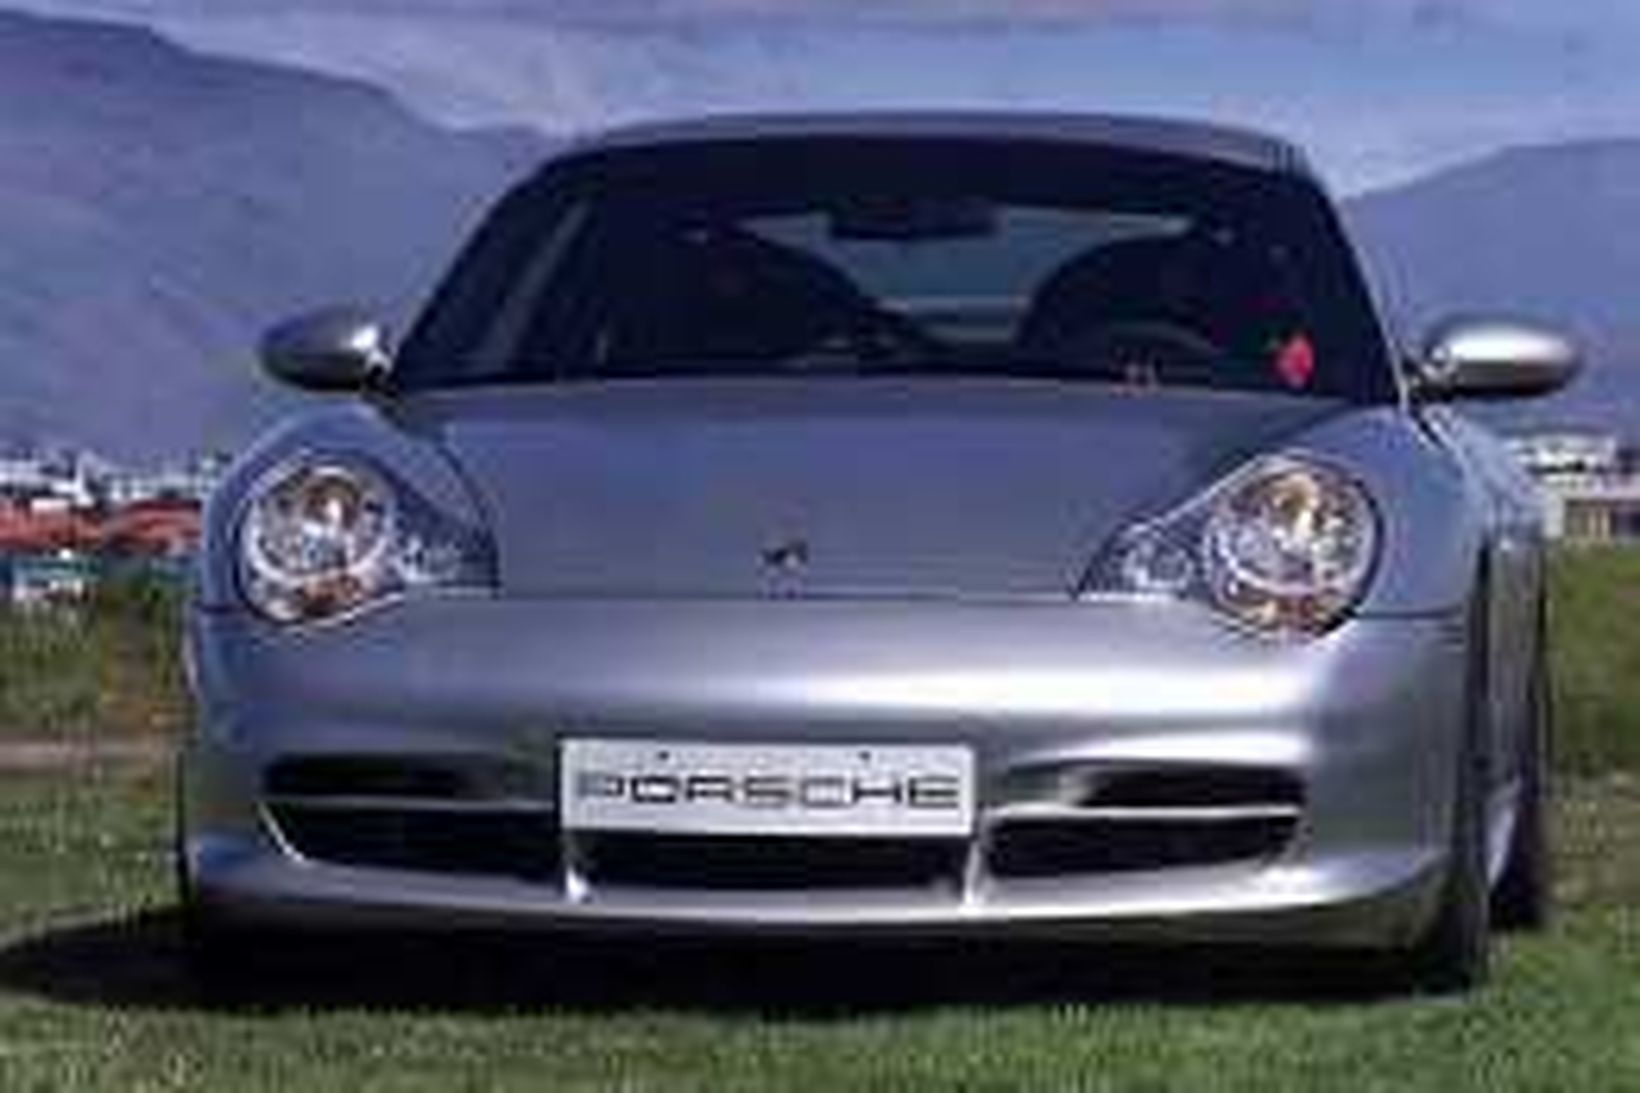 Porsche-bílar voru vinsælir á Íslandi en ei meir